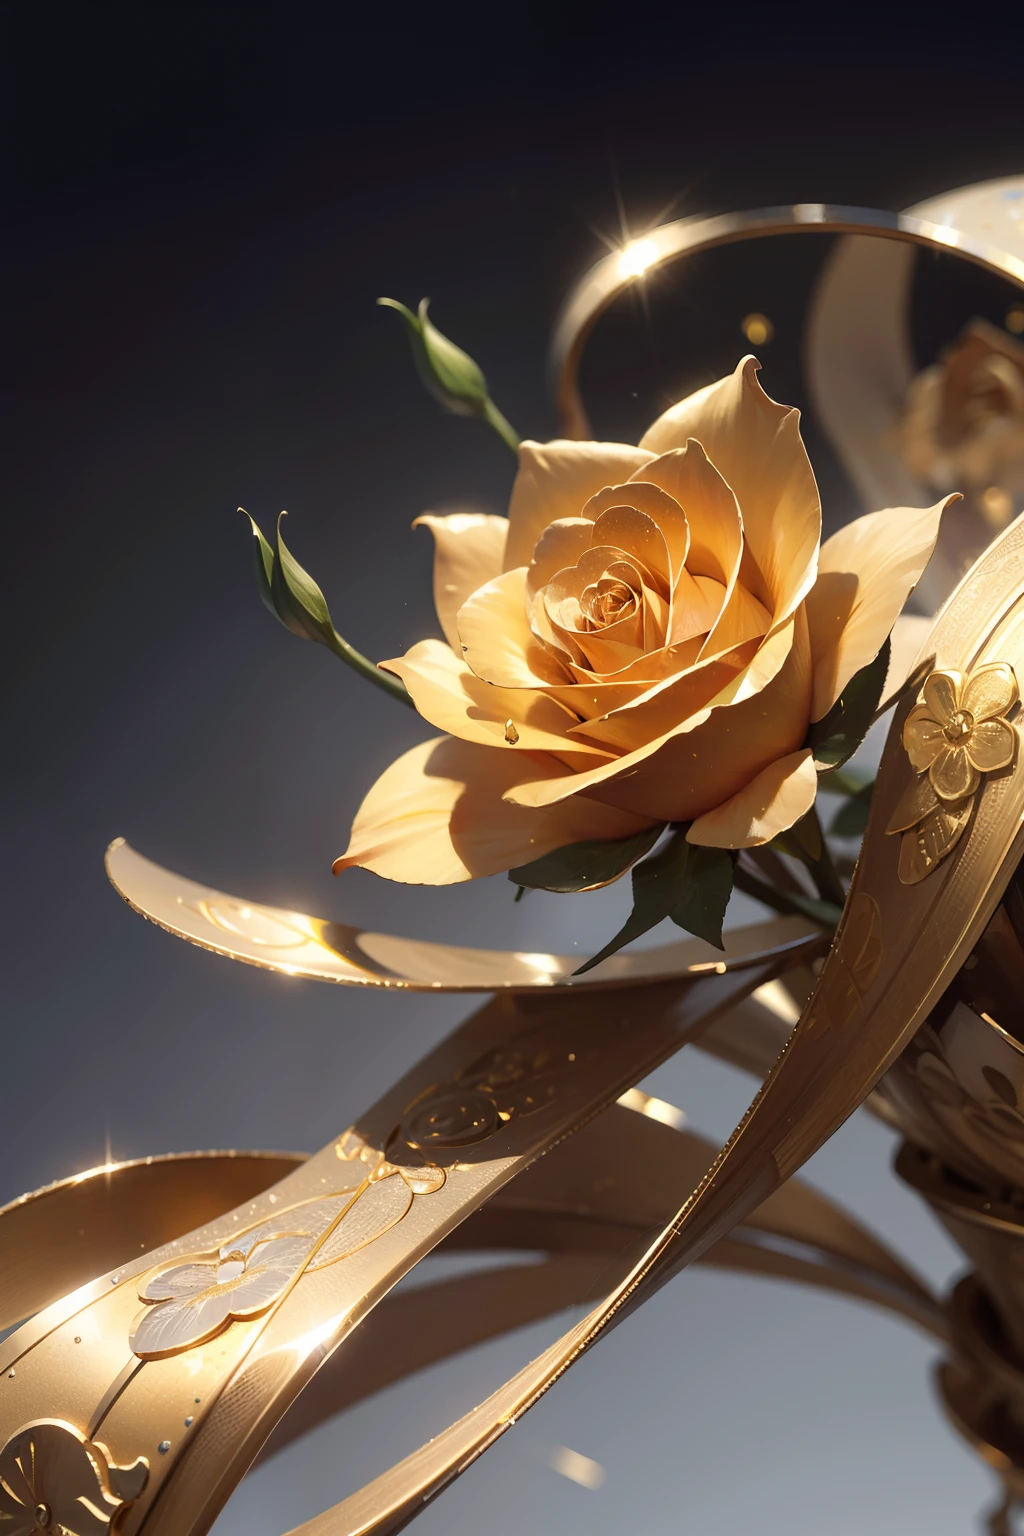 1 vollgoldene Ganzmetallrose，Die Blütenblätter verbinden sich zu einer Brücke，Metallische Textur，Alle Metalle，Goldteile，Reflektormaterial aus Metall，Goldene Blüten，super Detaillierung，Ultraklare Bildqualität，einfarbiger Hintergrund